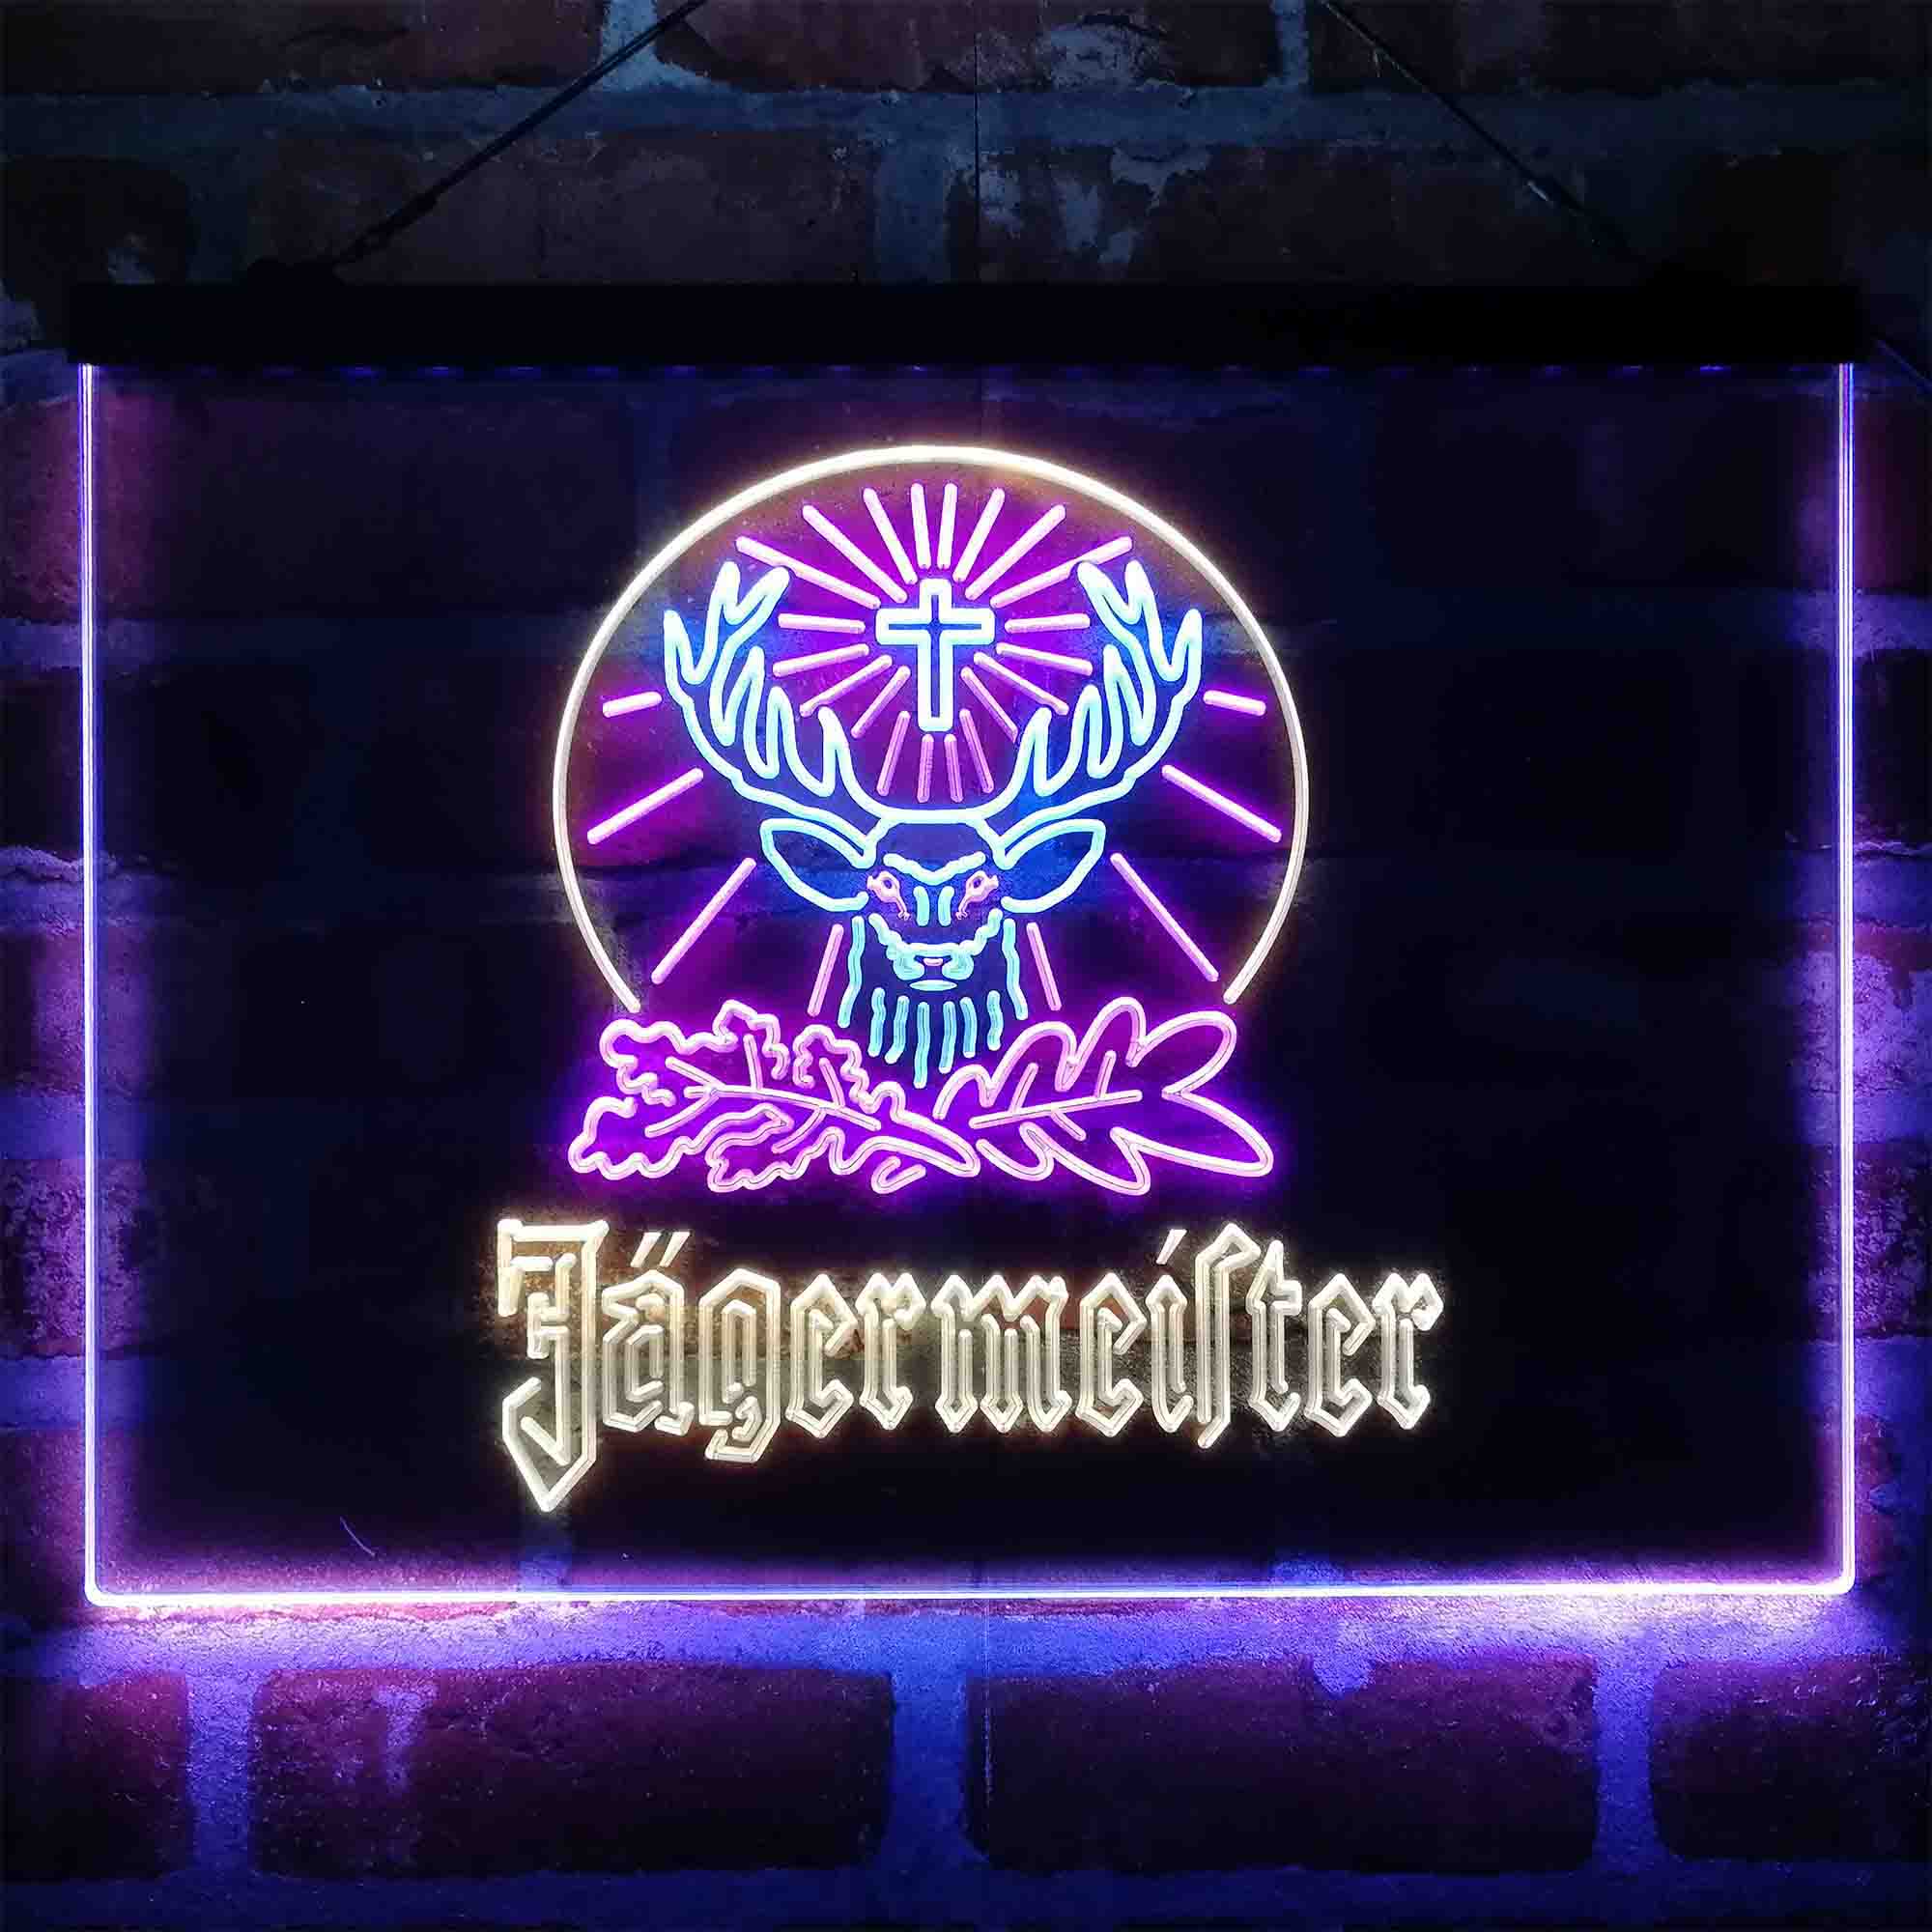 Jagermeister Wine Neon-Like LED Sign